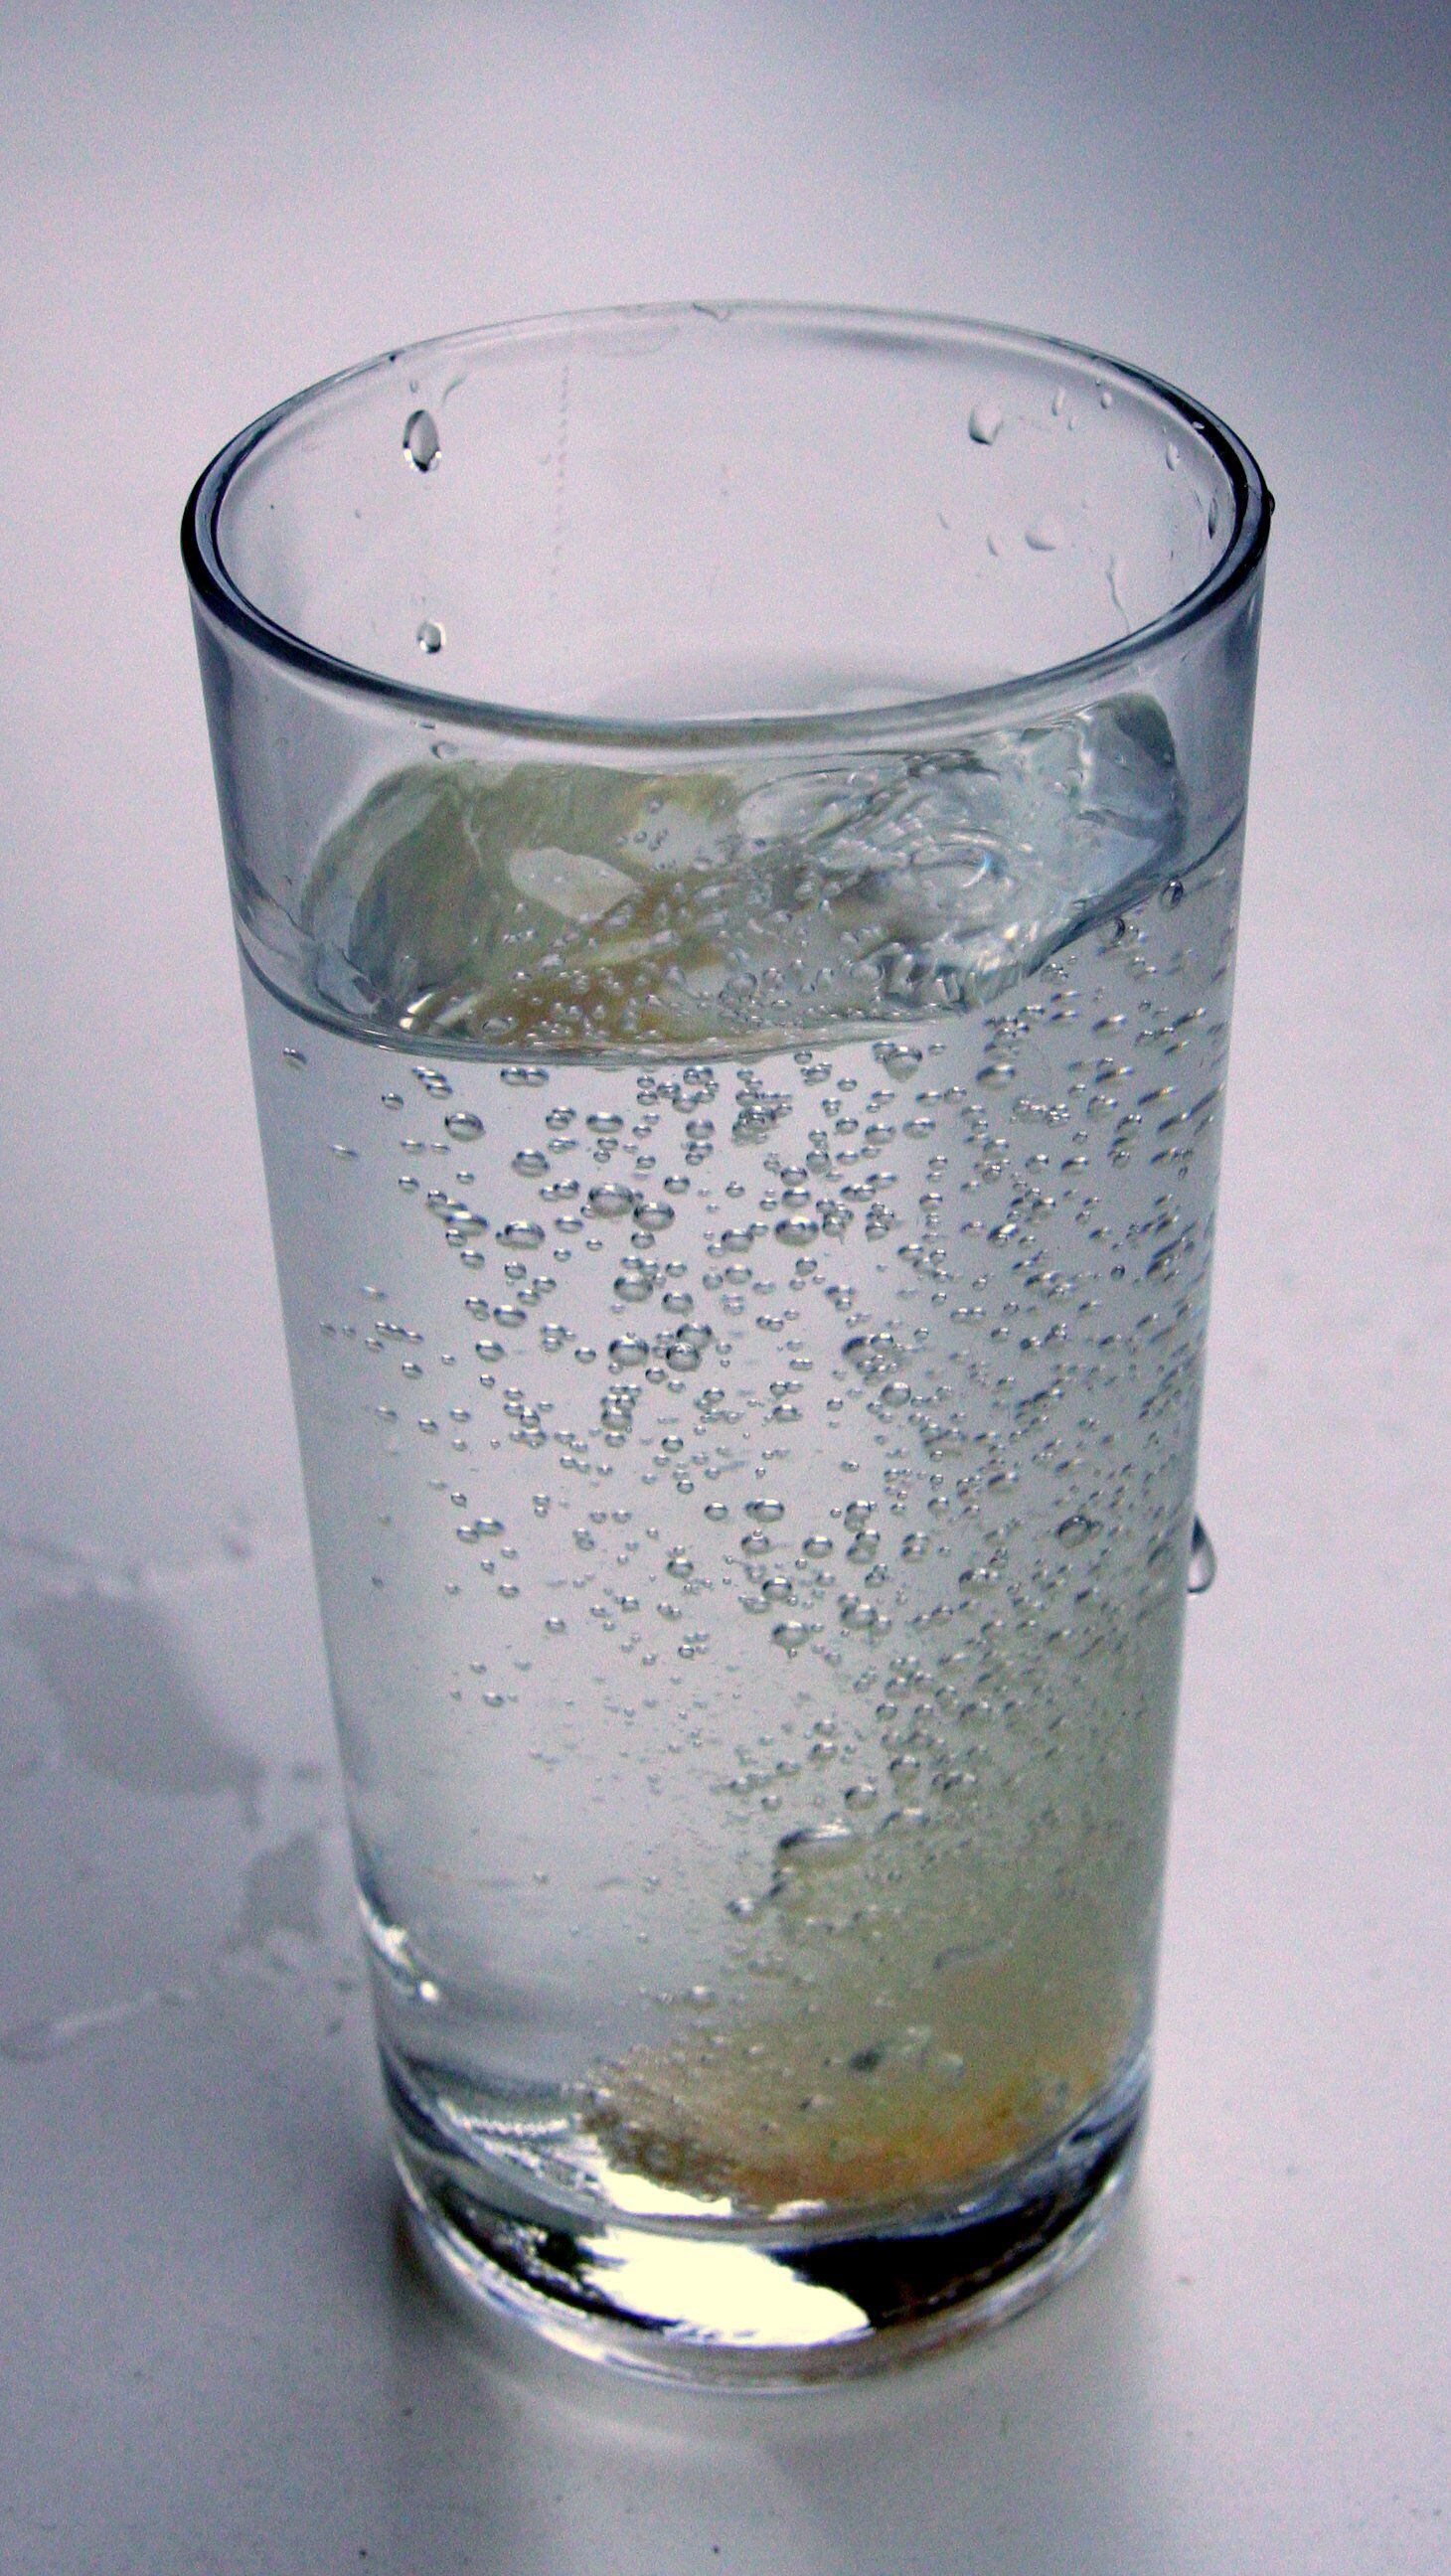 En exceso, el agua mineral puede perjudicar al organismo. (Foto: Wikimedia Commons)